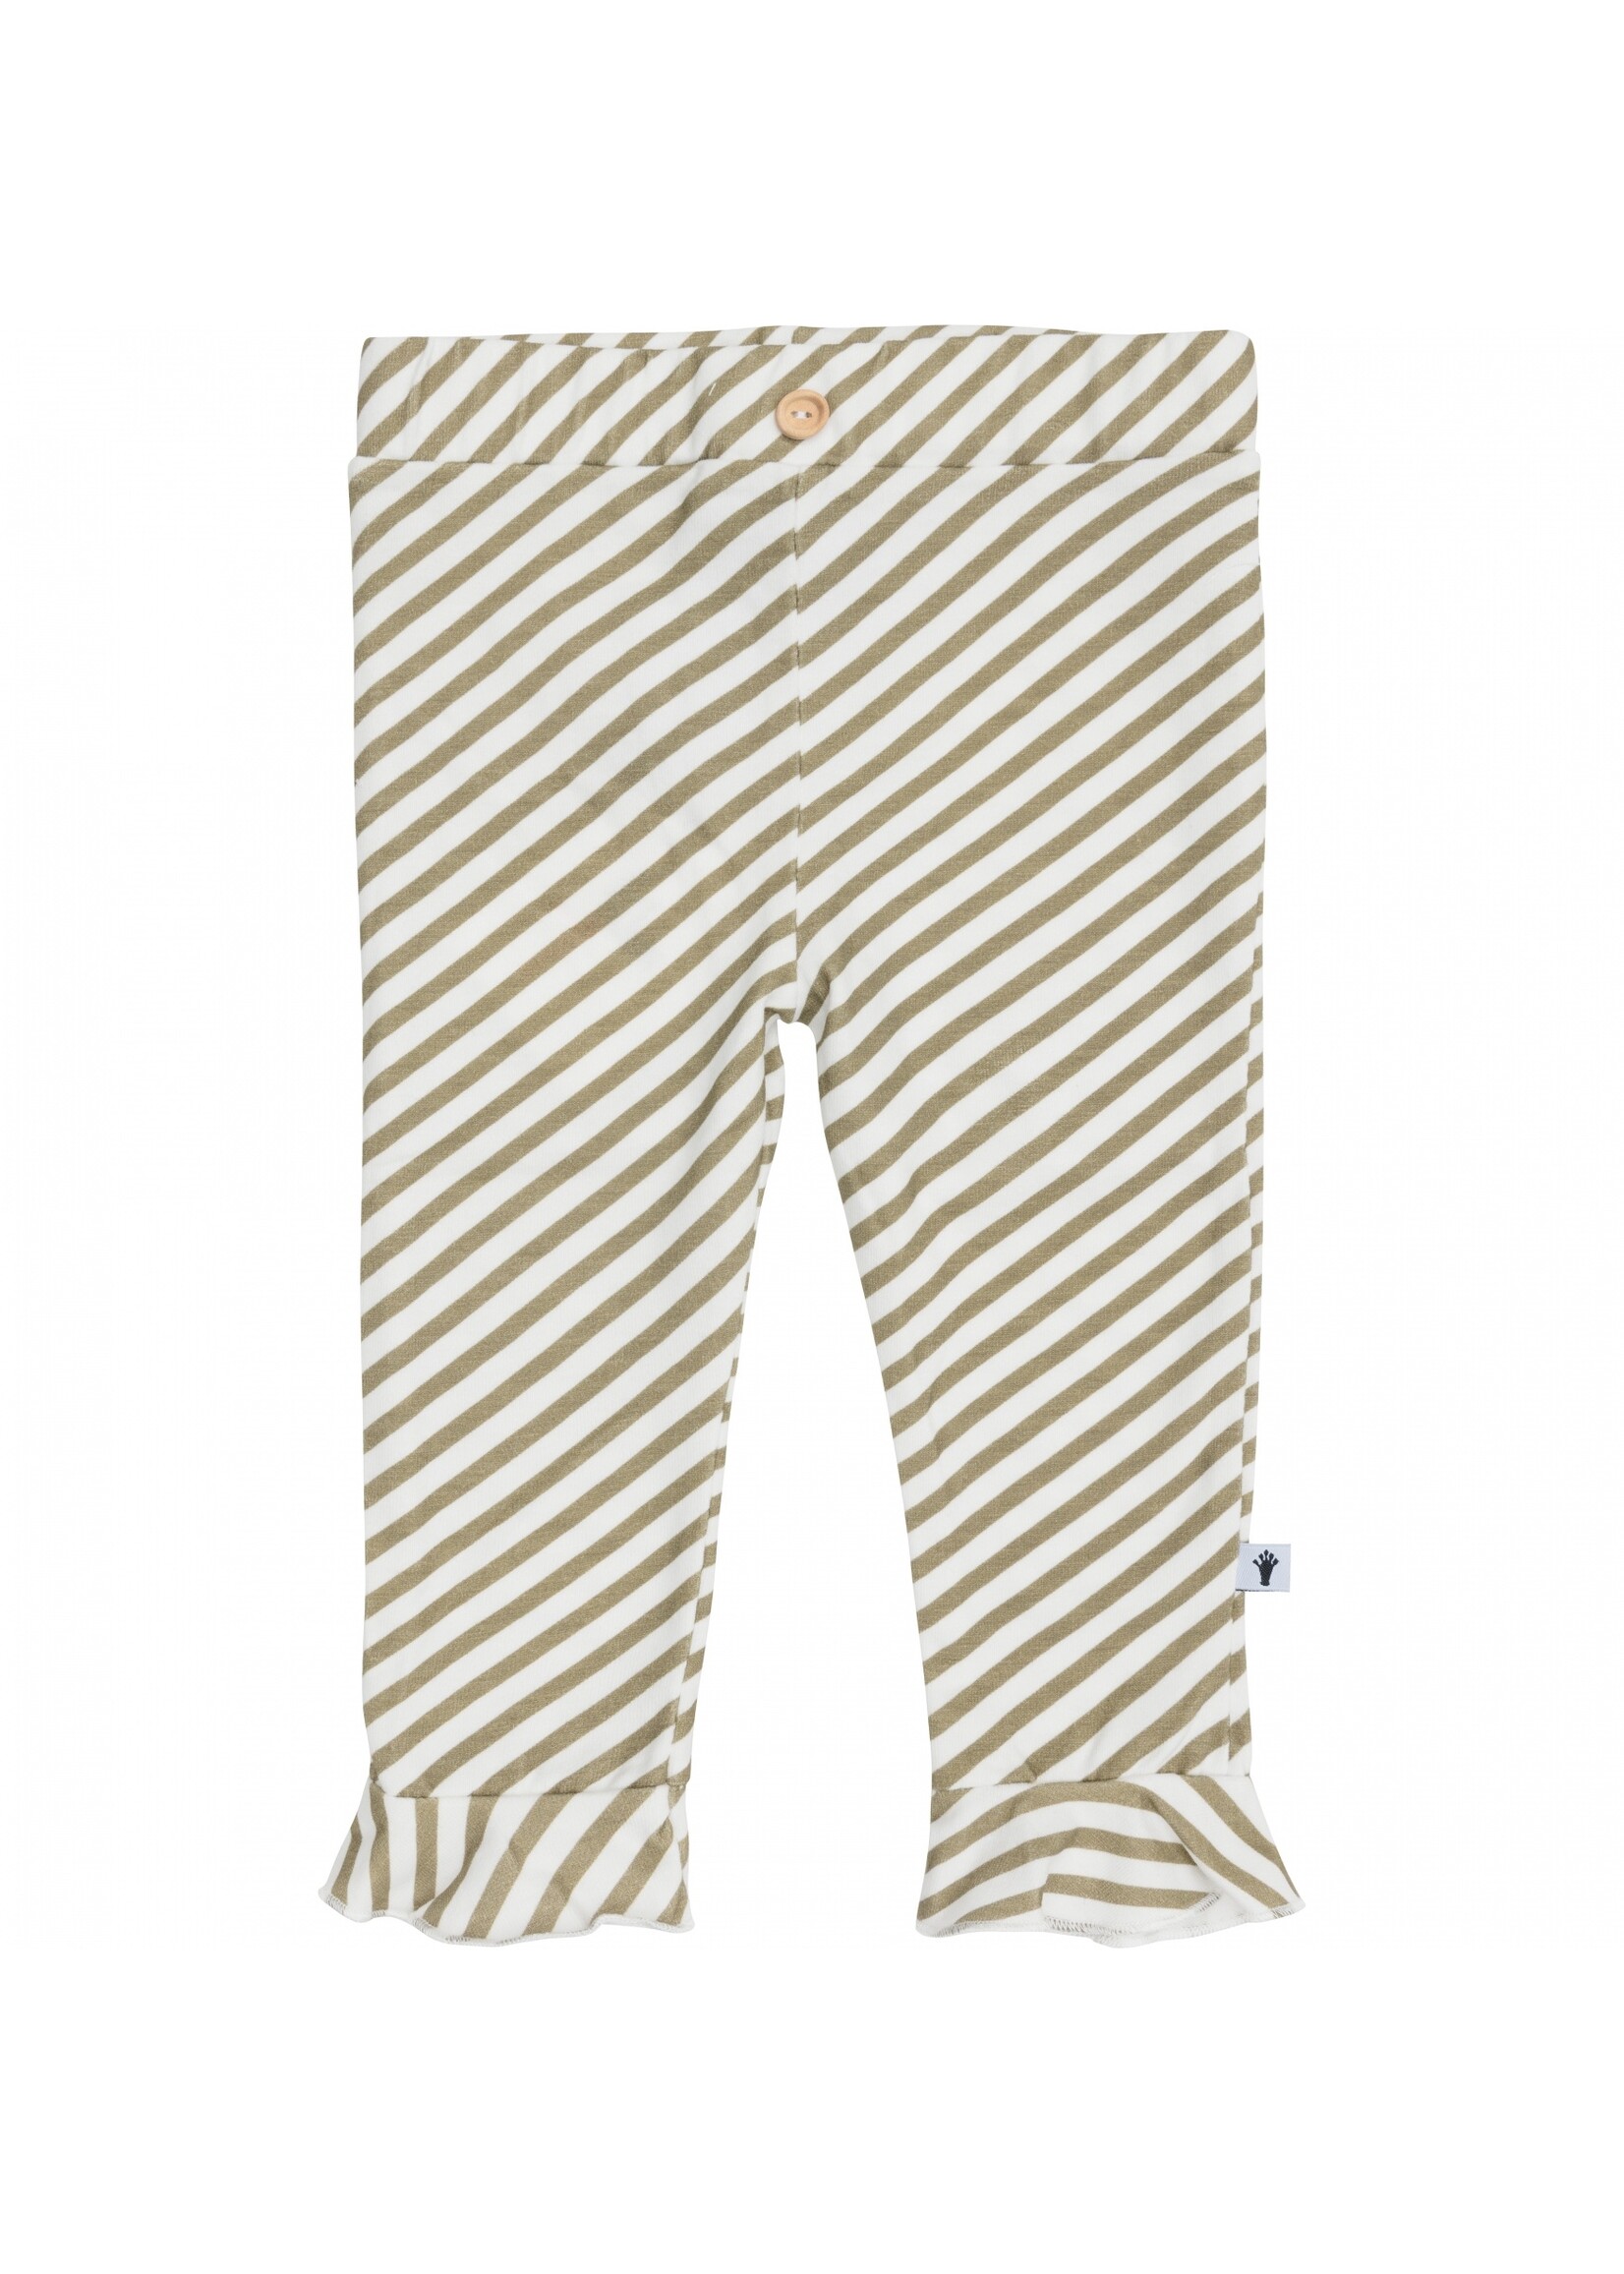 Klein Baby Trouser Ruffle Stripe Off White/Twill